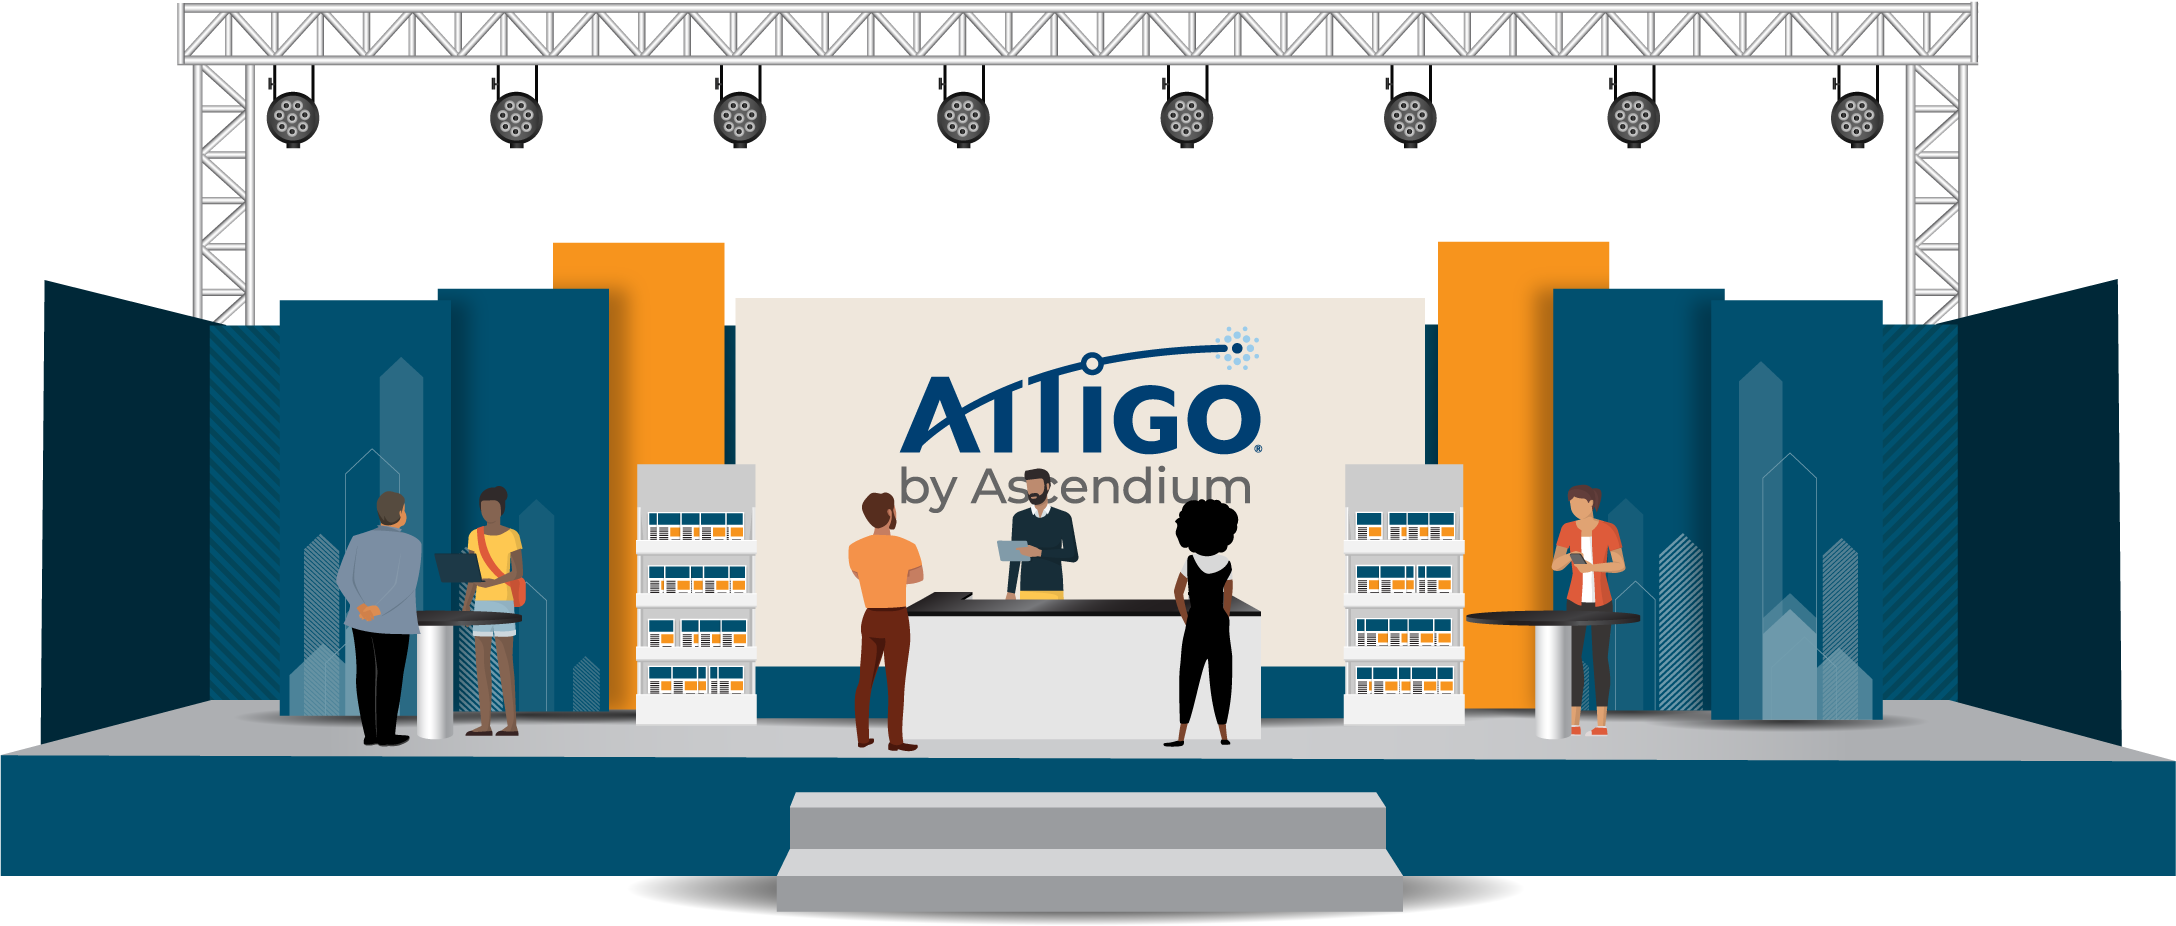 Attigo-Virtual-Booth-v3